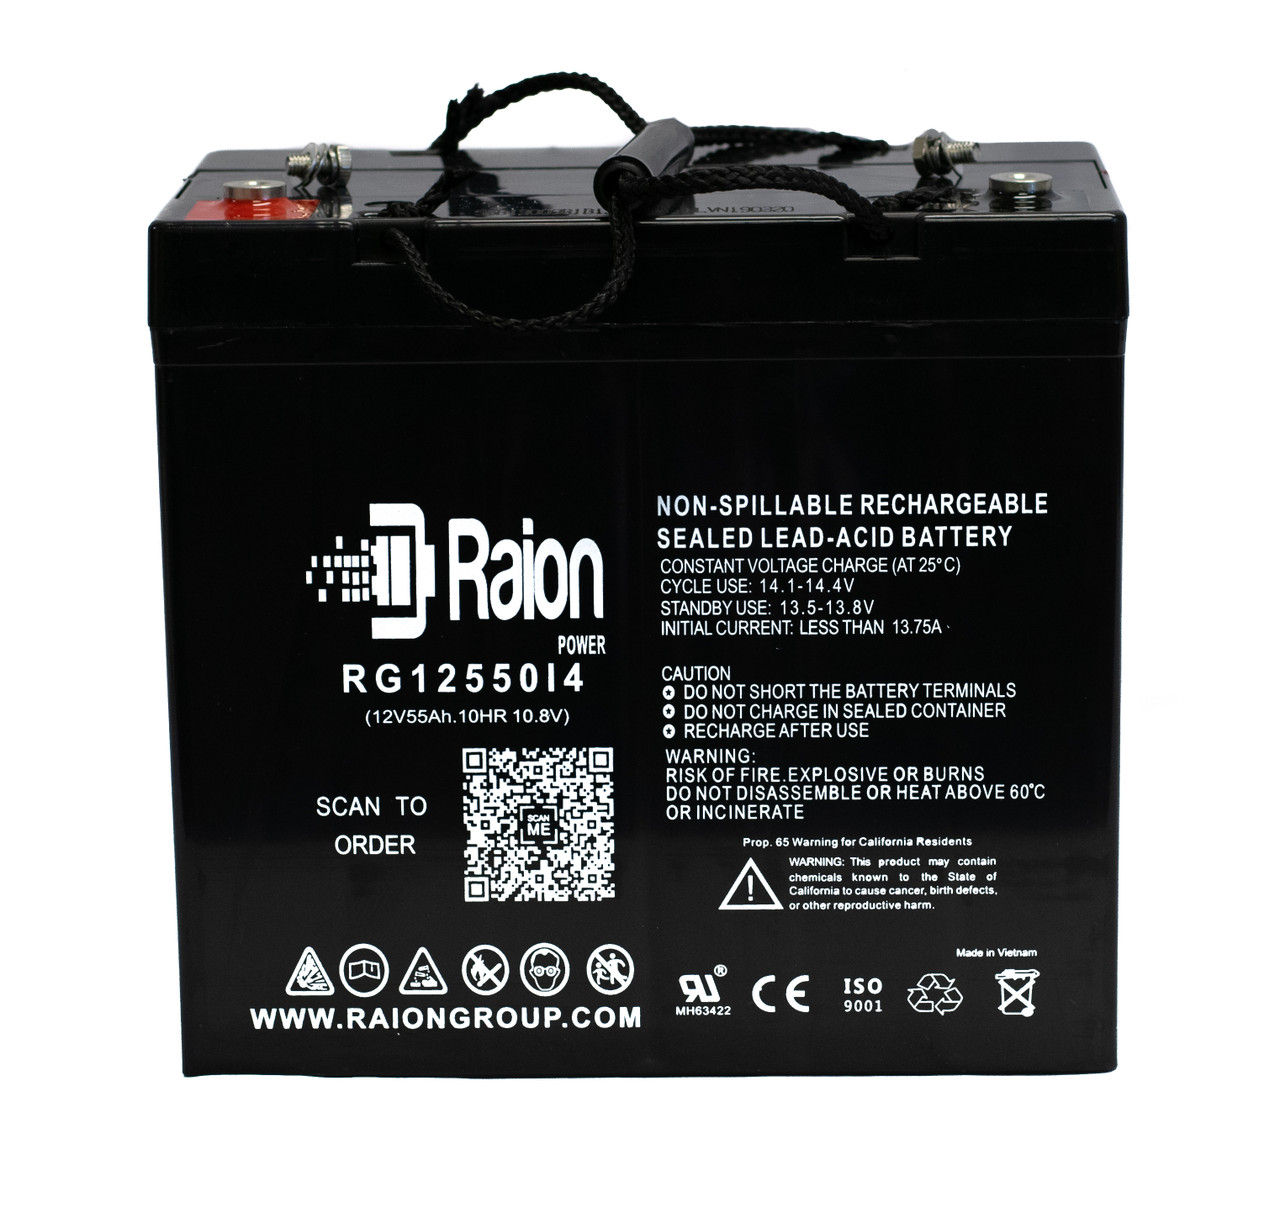 Raion Power RG12550I4 12V 55Ah Lead Acid Battery for Whelen HORNET All Hazard Siren System